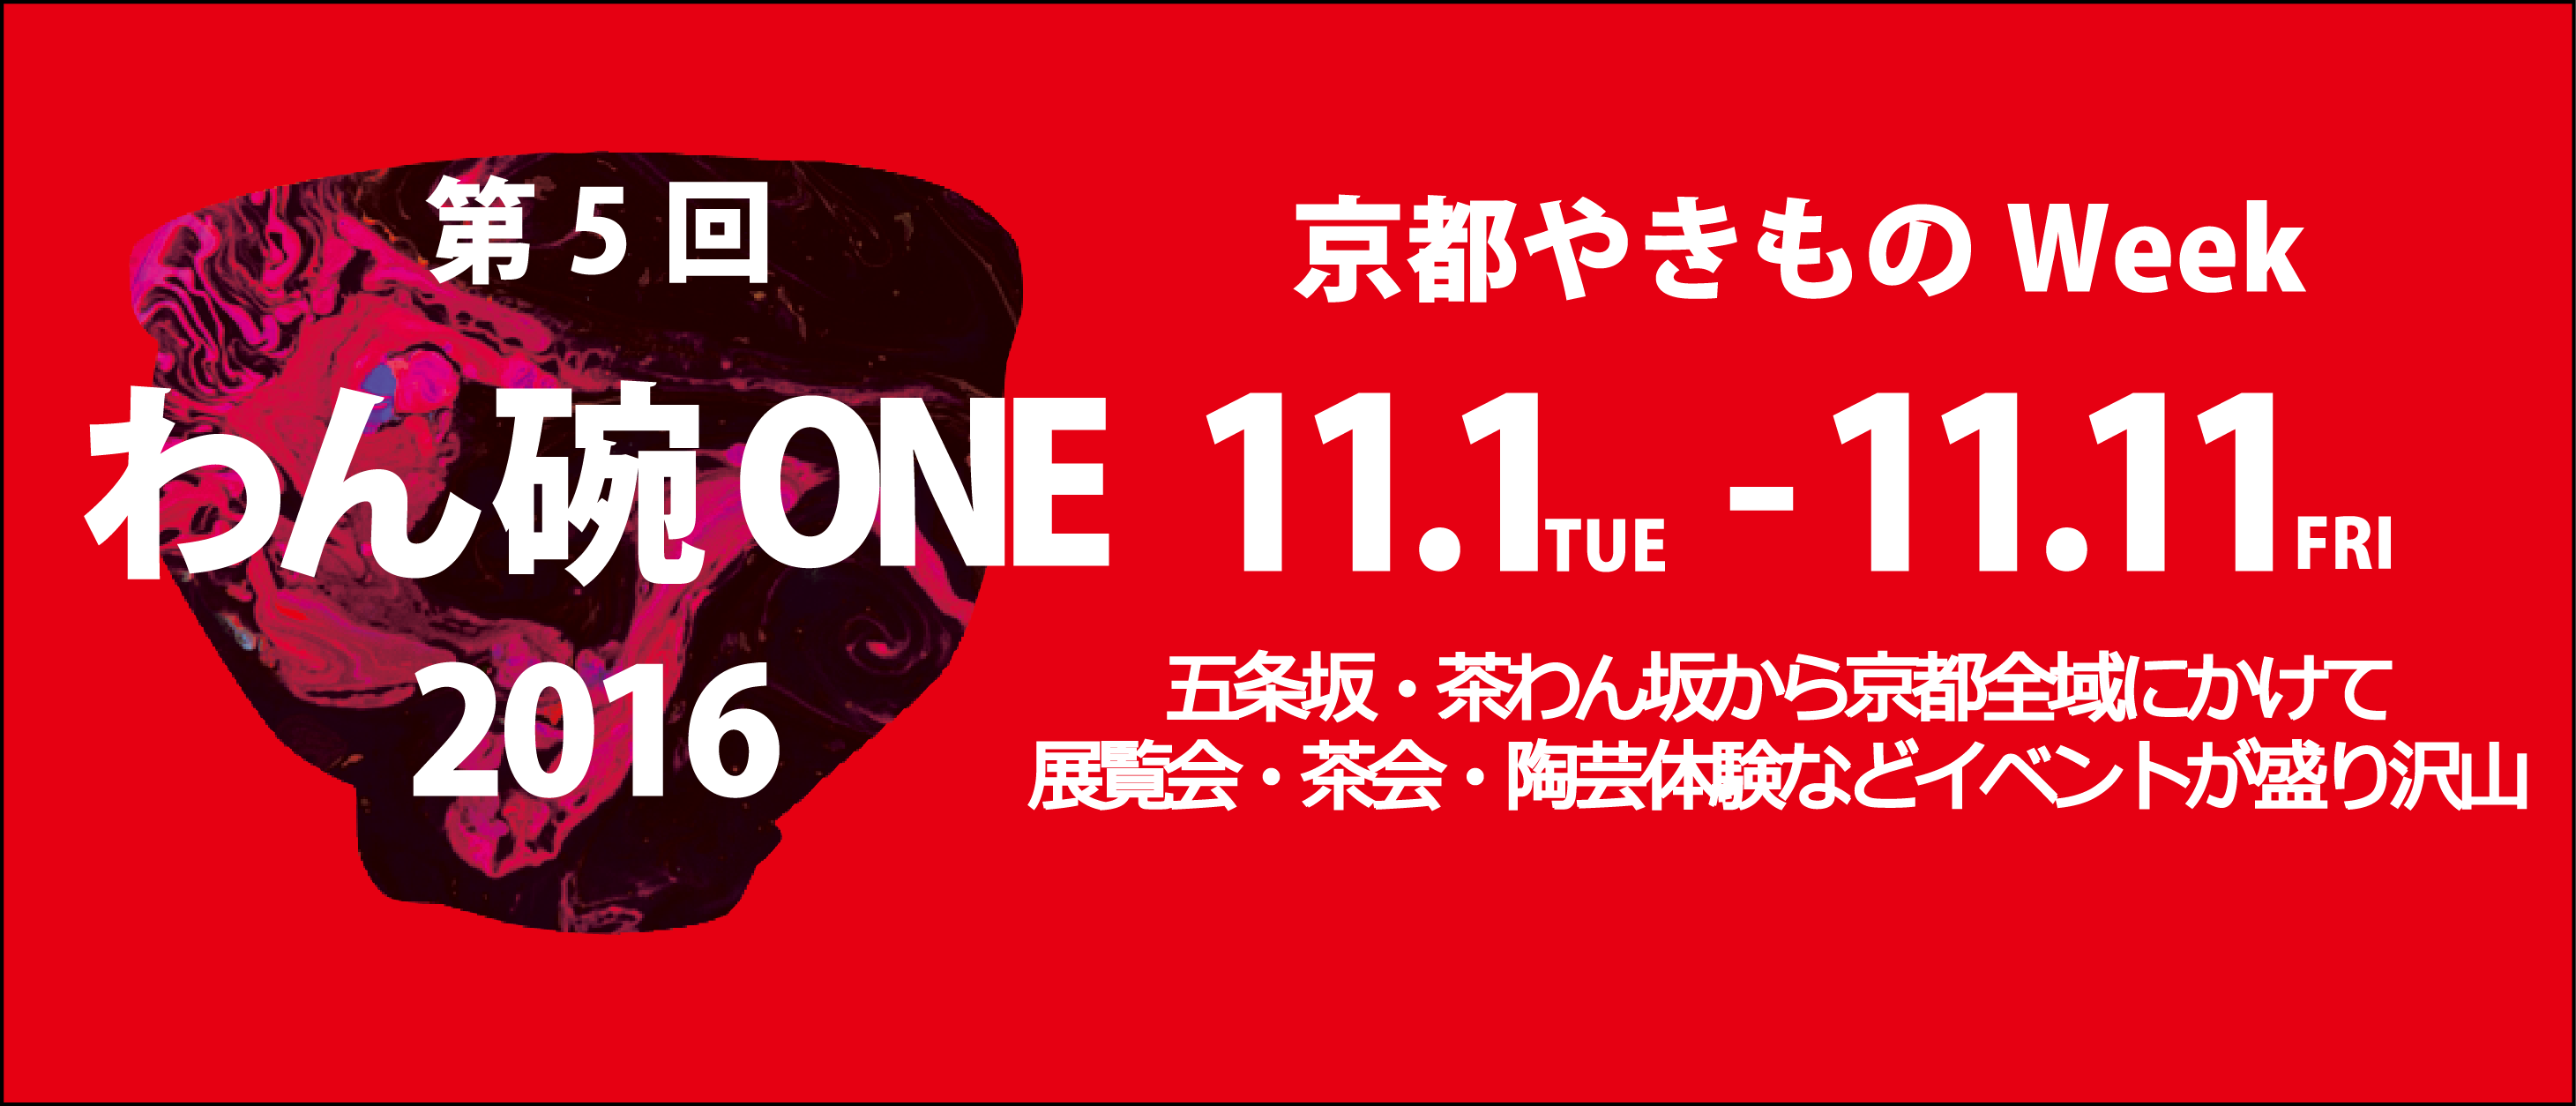 わん・碗・ONE展 2016年11月1日～11日 五条坂・茶わん坂から京都全域にかけて11日間のやきものWeek